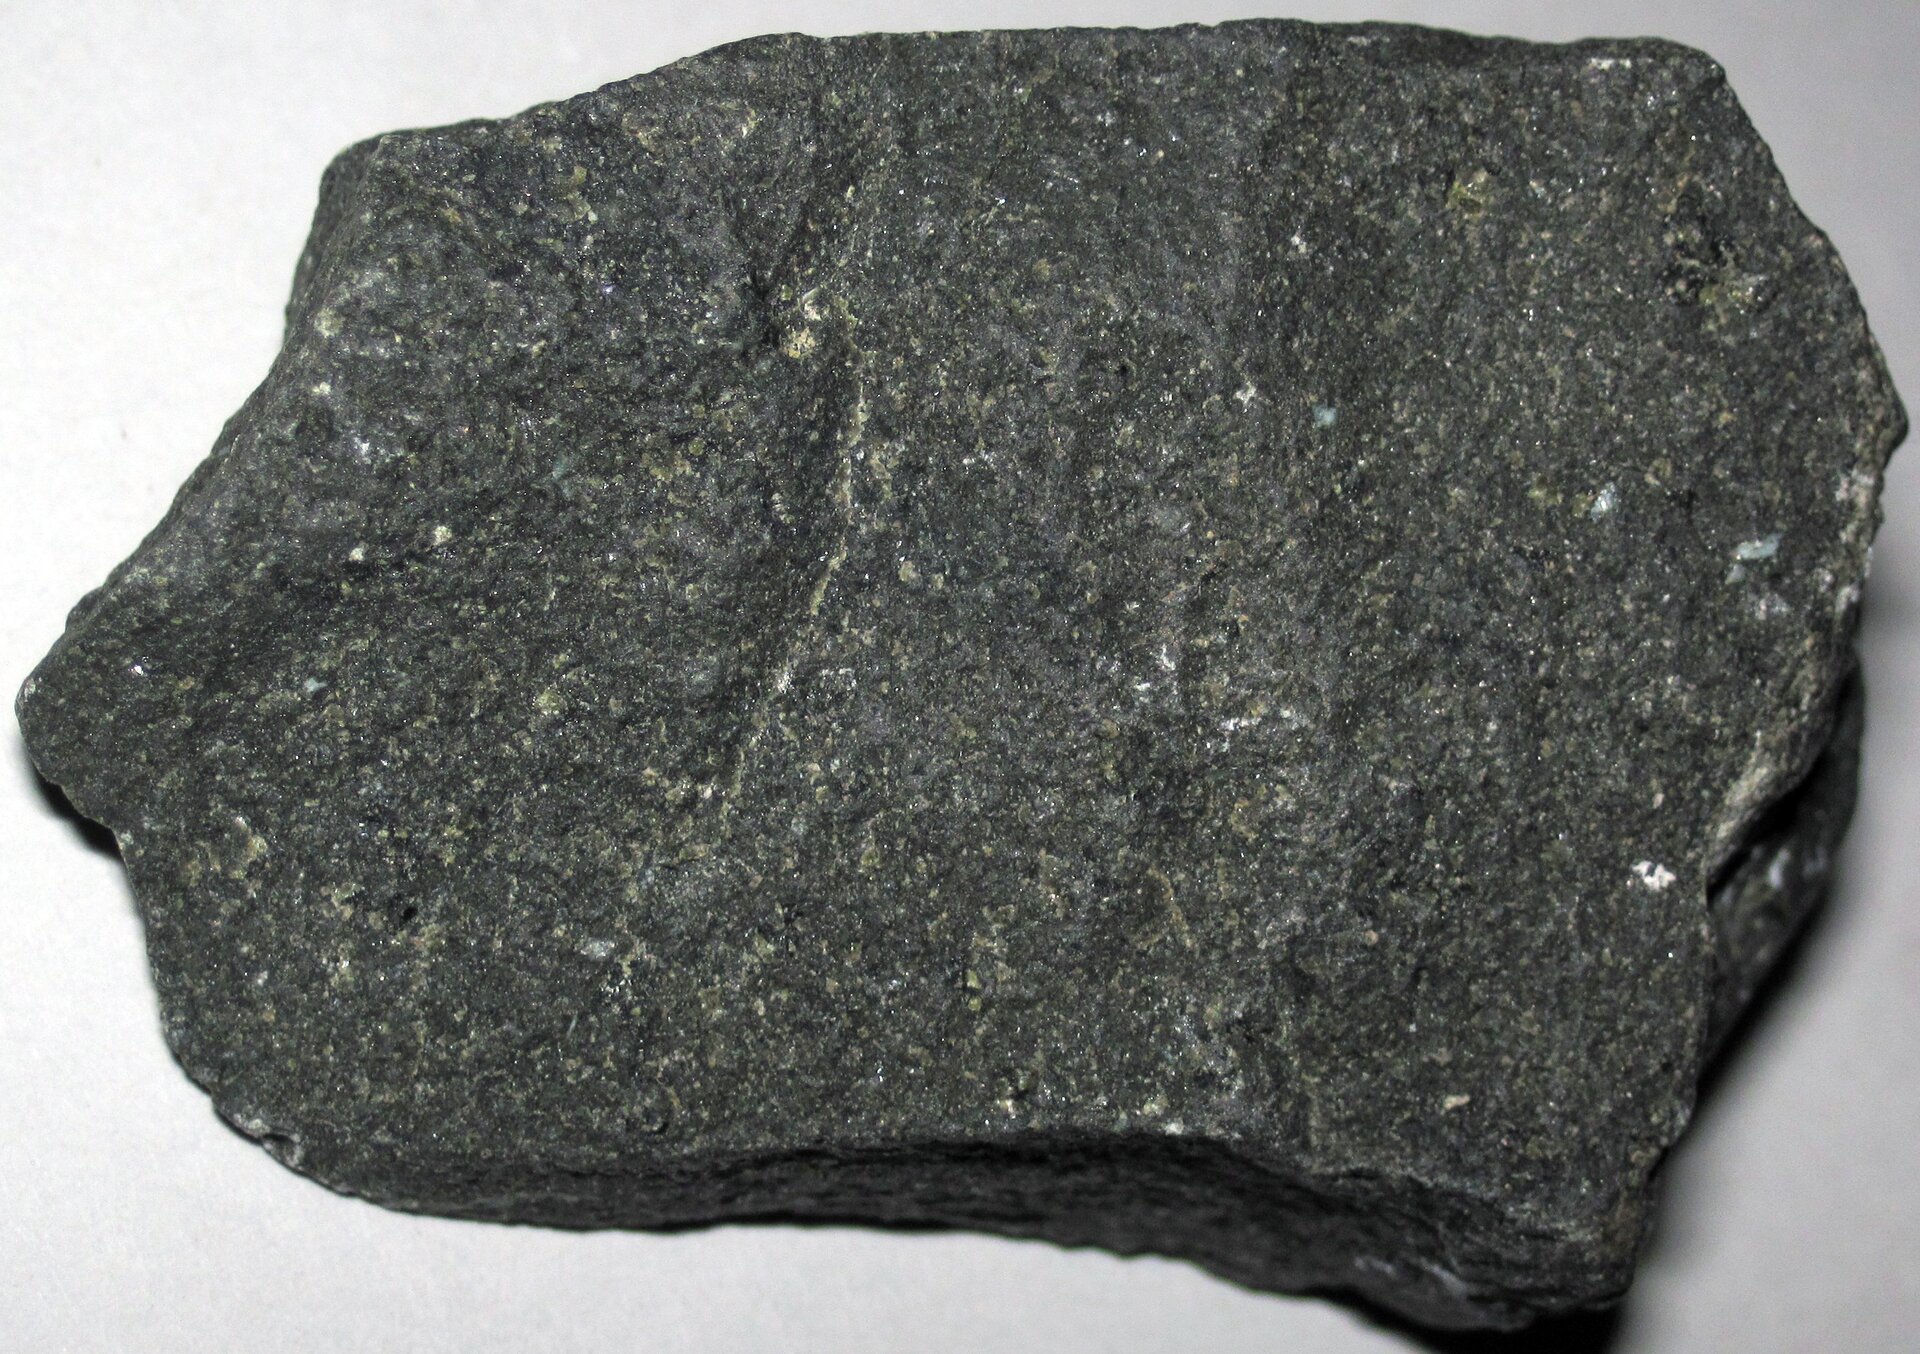 Zdjęcie przedstawiające kawałek bazaltu. Skała ma ciemnoszarą barwę i drobną strukturę krystaliczną. Miejscami na jej powierzchni występują rzadko rozmieszczone białe fragmenty.